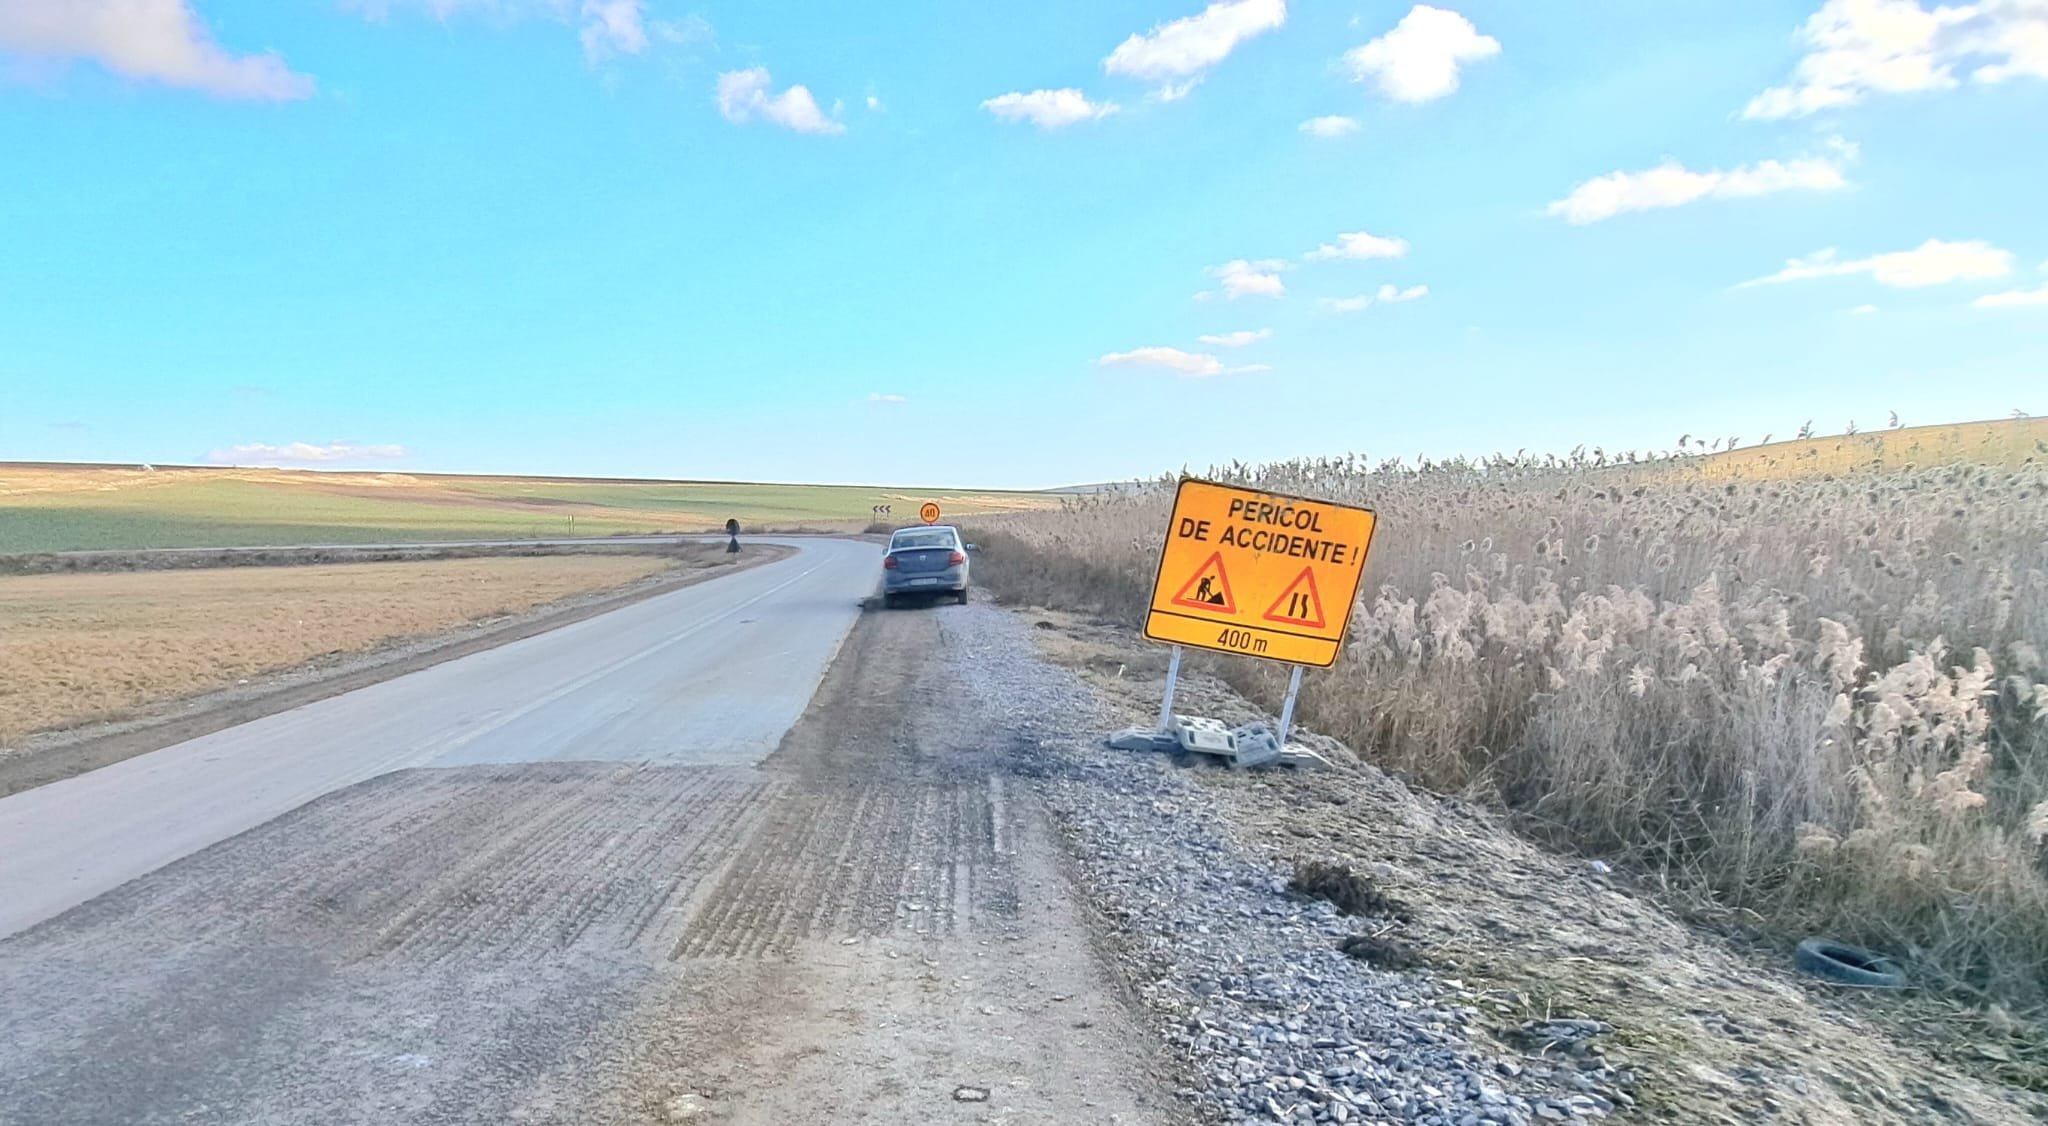  Drumul Iaşi Hârlău- Botoşani: pe prima parte se circulă bine, pe a doua îţi strici maşina (VIDEO)